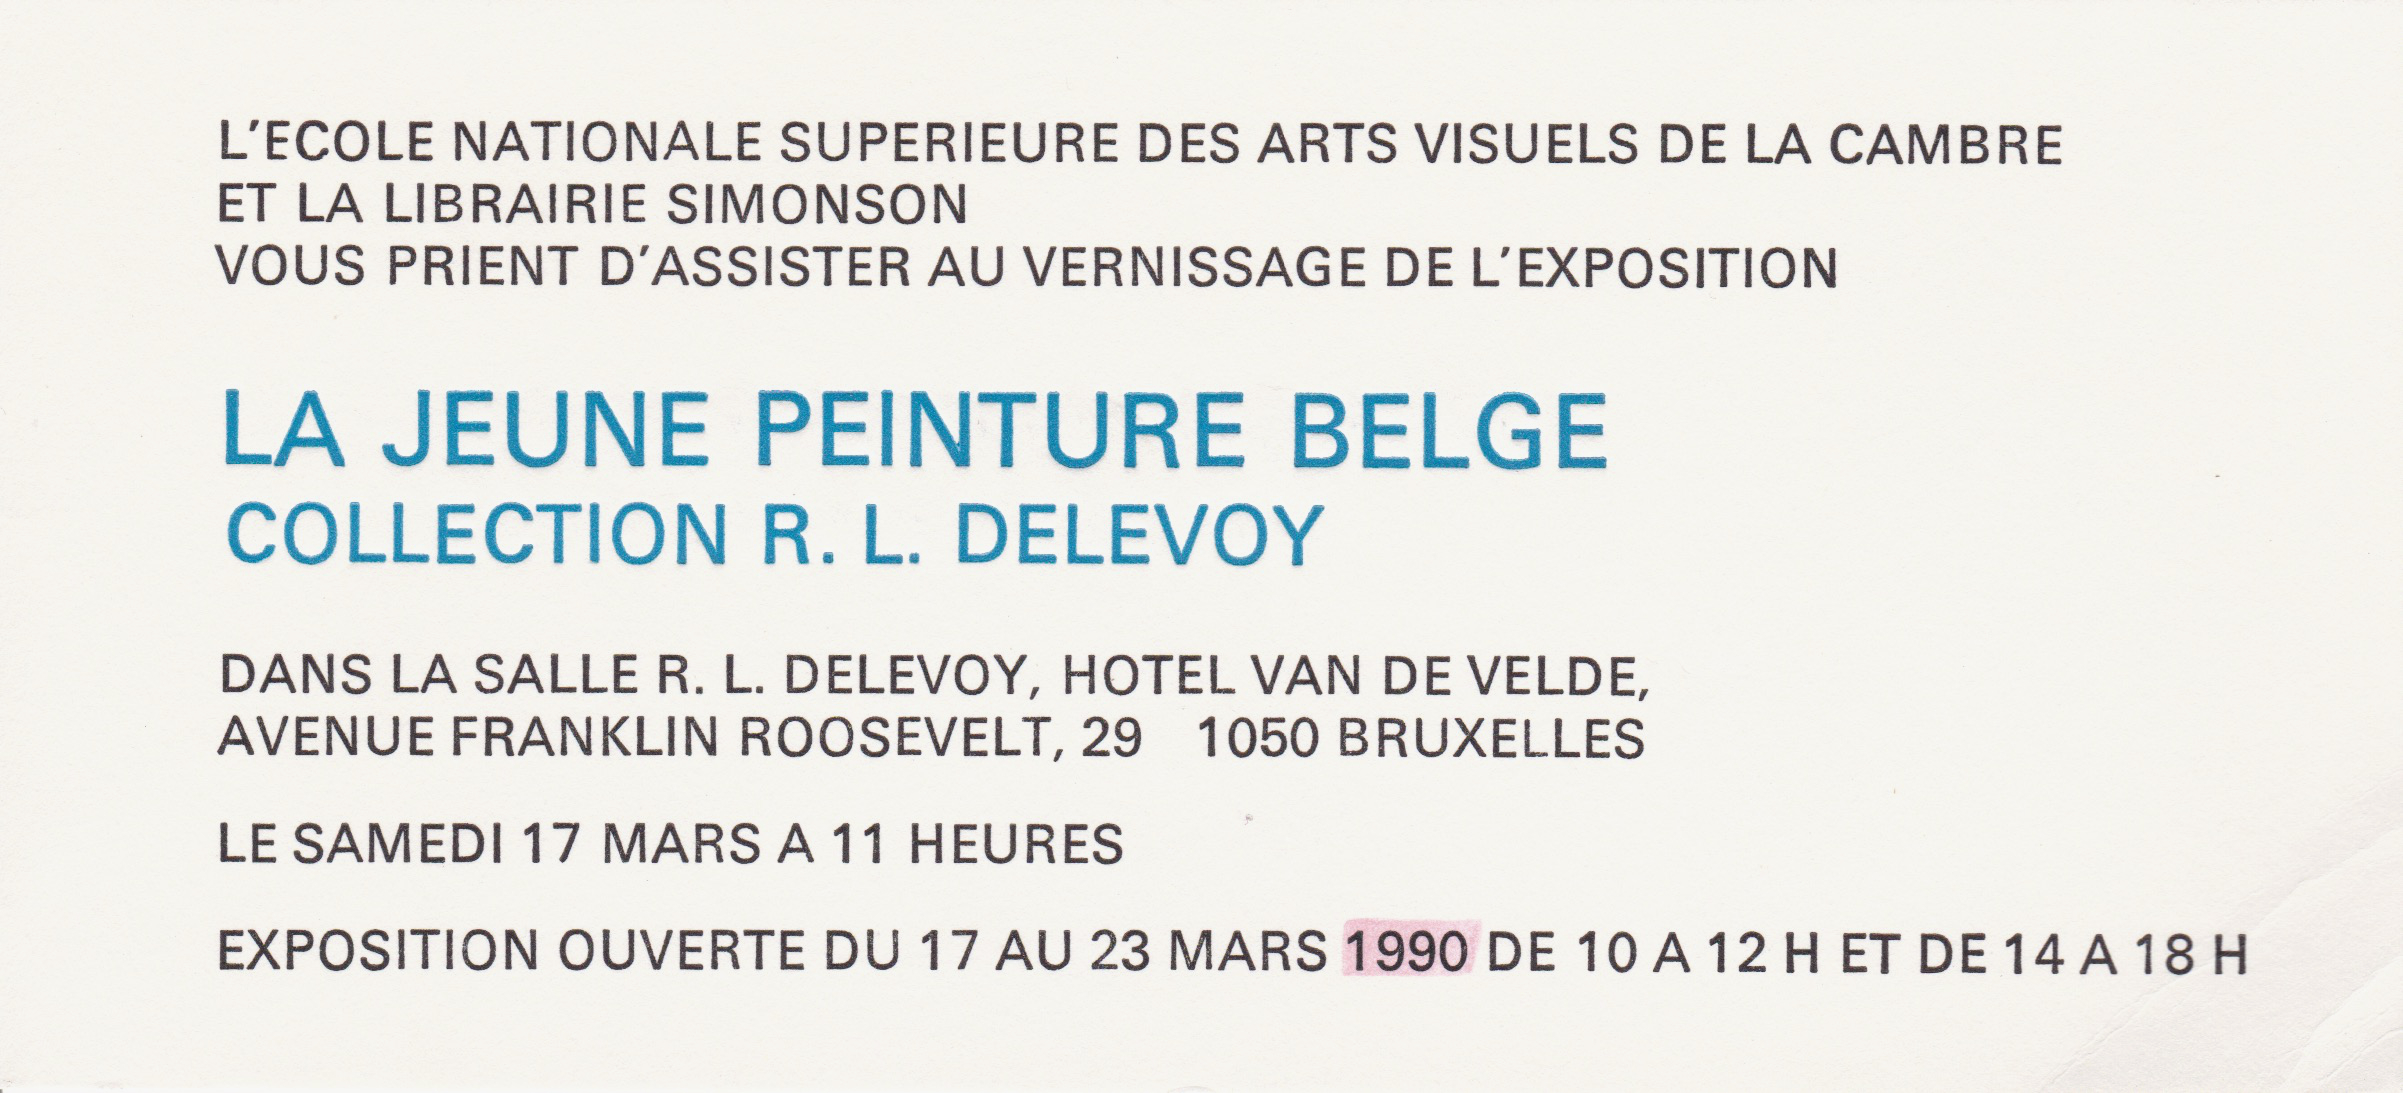 La Jeune Peinture Belge, coll. R.L. Delevoy, école de la Cambre, Bruxelles, 1990